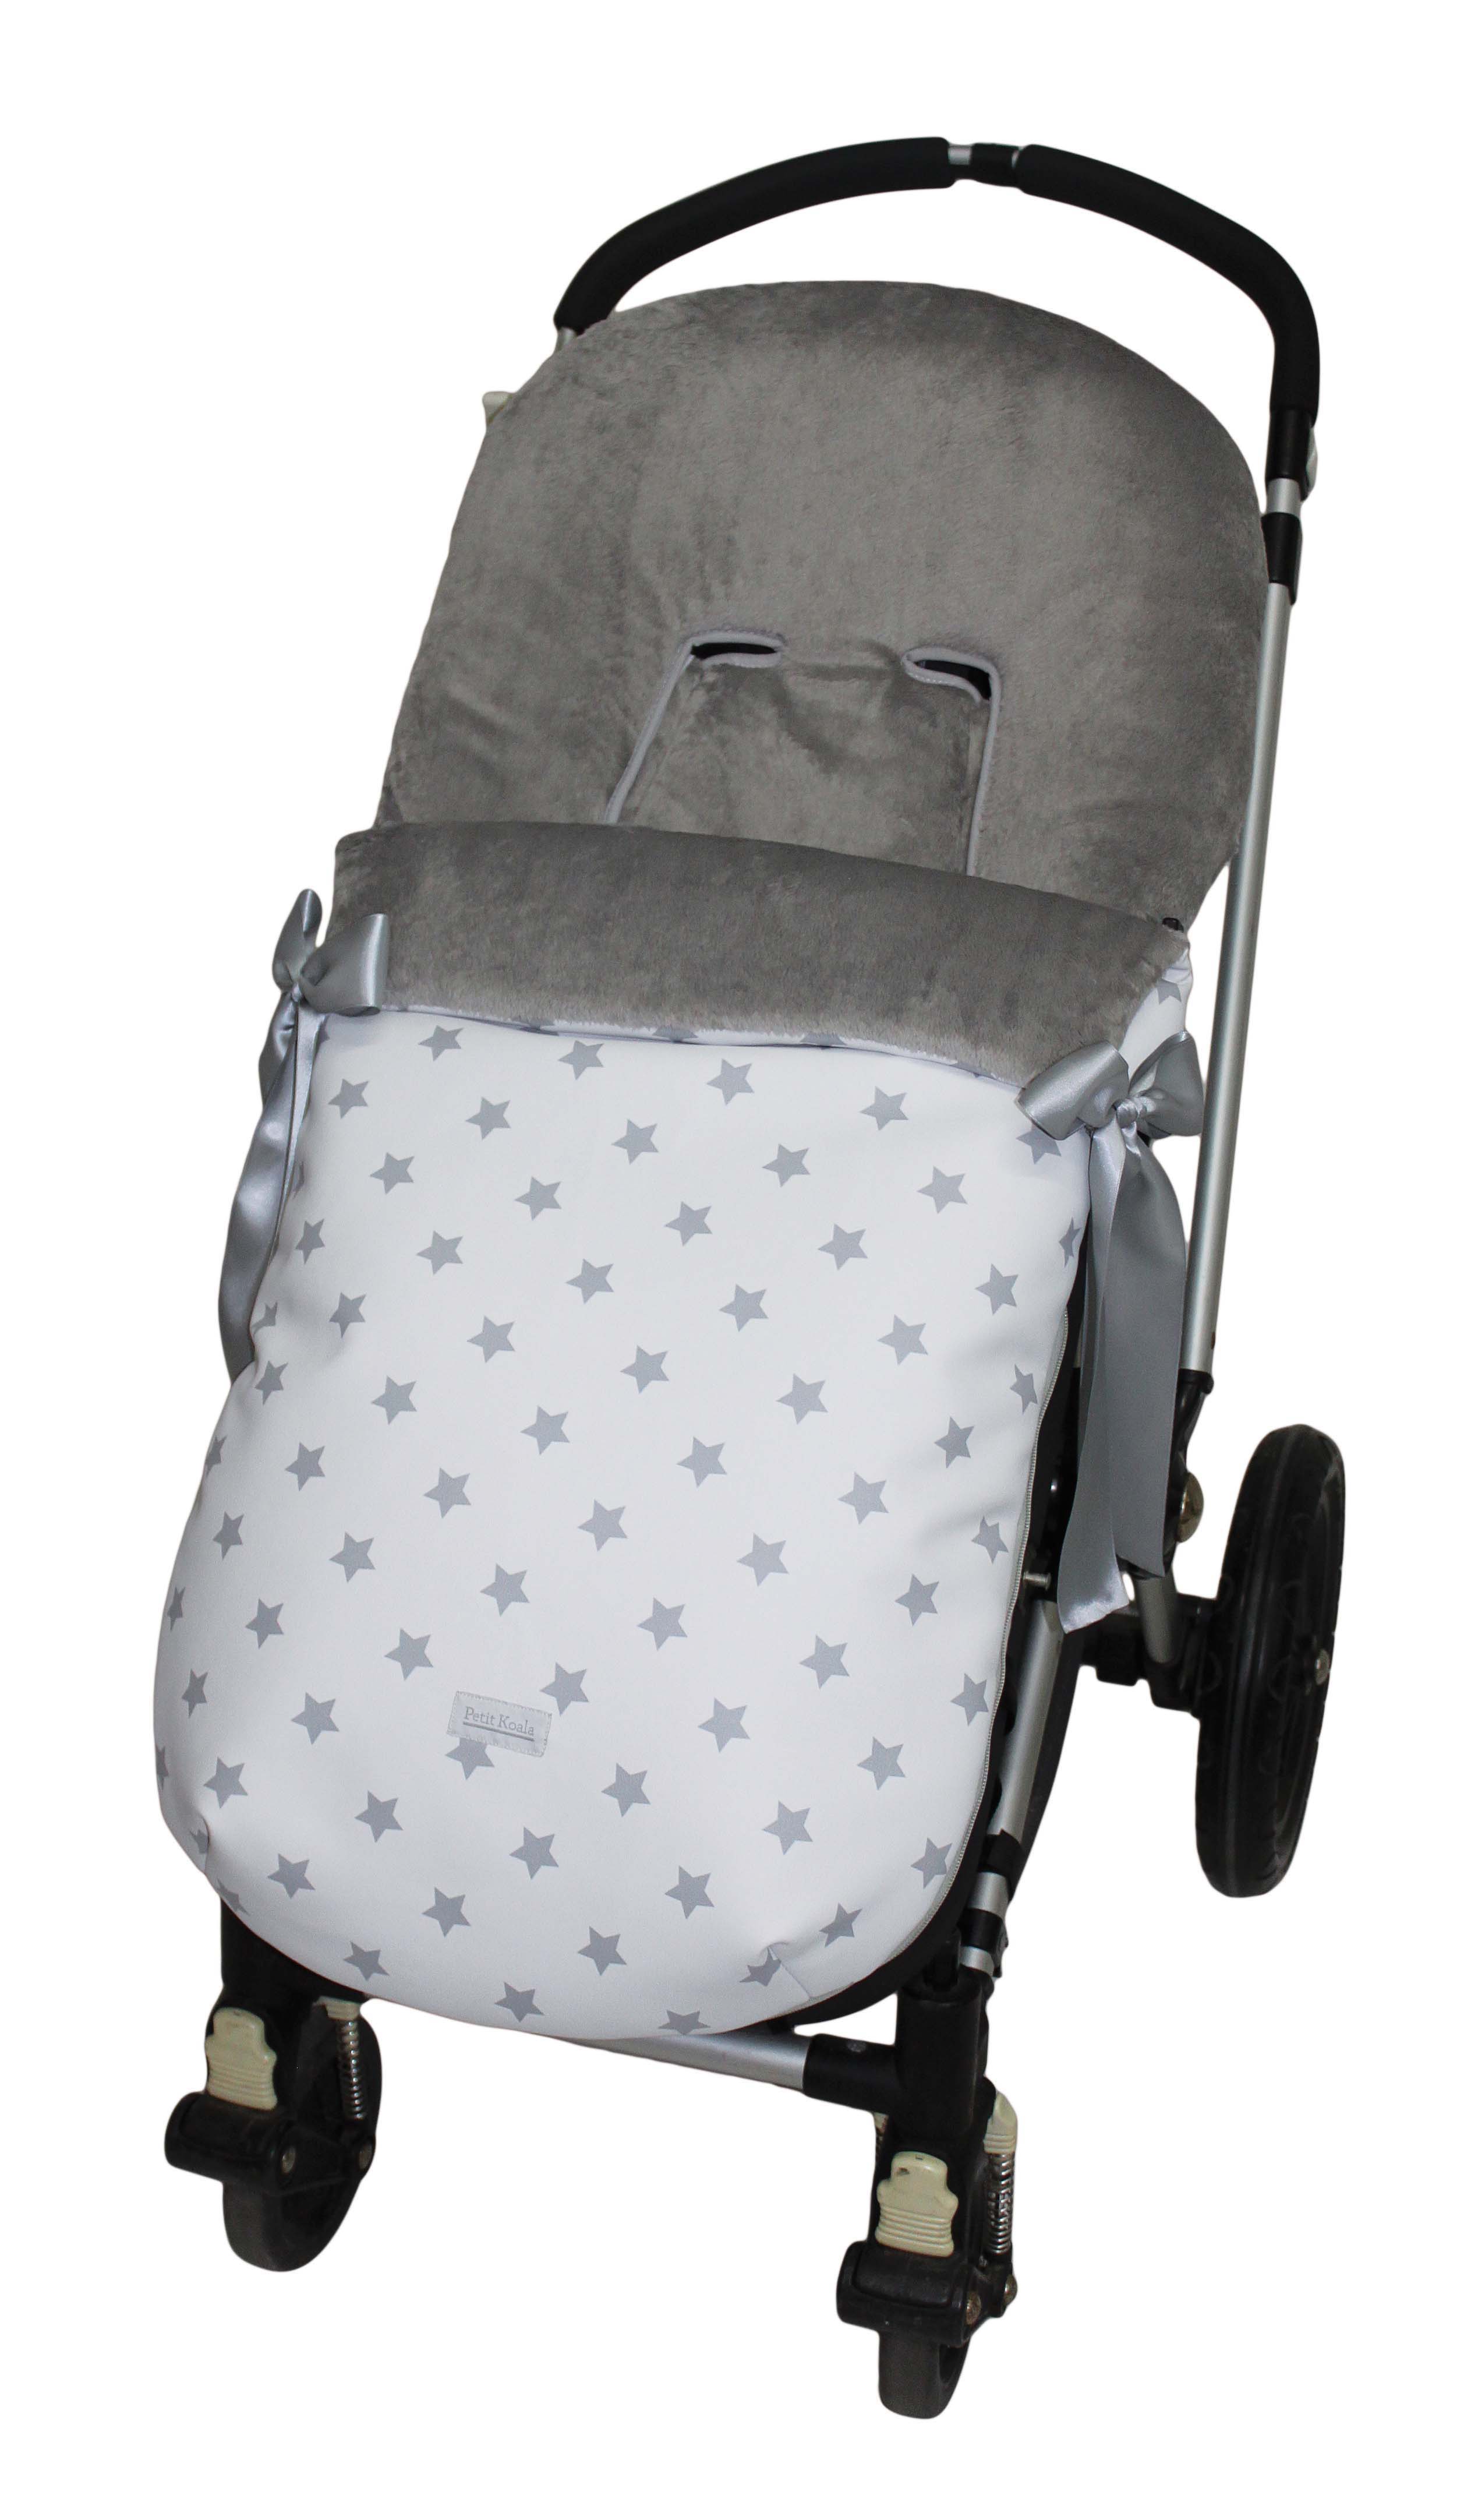 Saco bugaboo polipiel estelar gris pelo gris [saco-bugaboo-invierno-polipiel-e]  - 54,51€ : Sacos silla paseo, Fundas para silla bebe